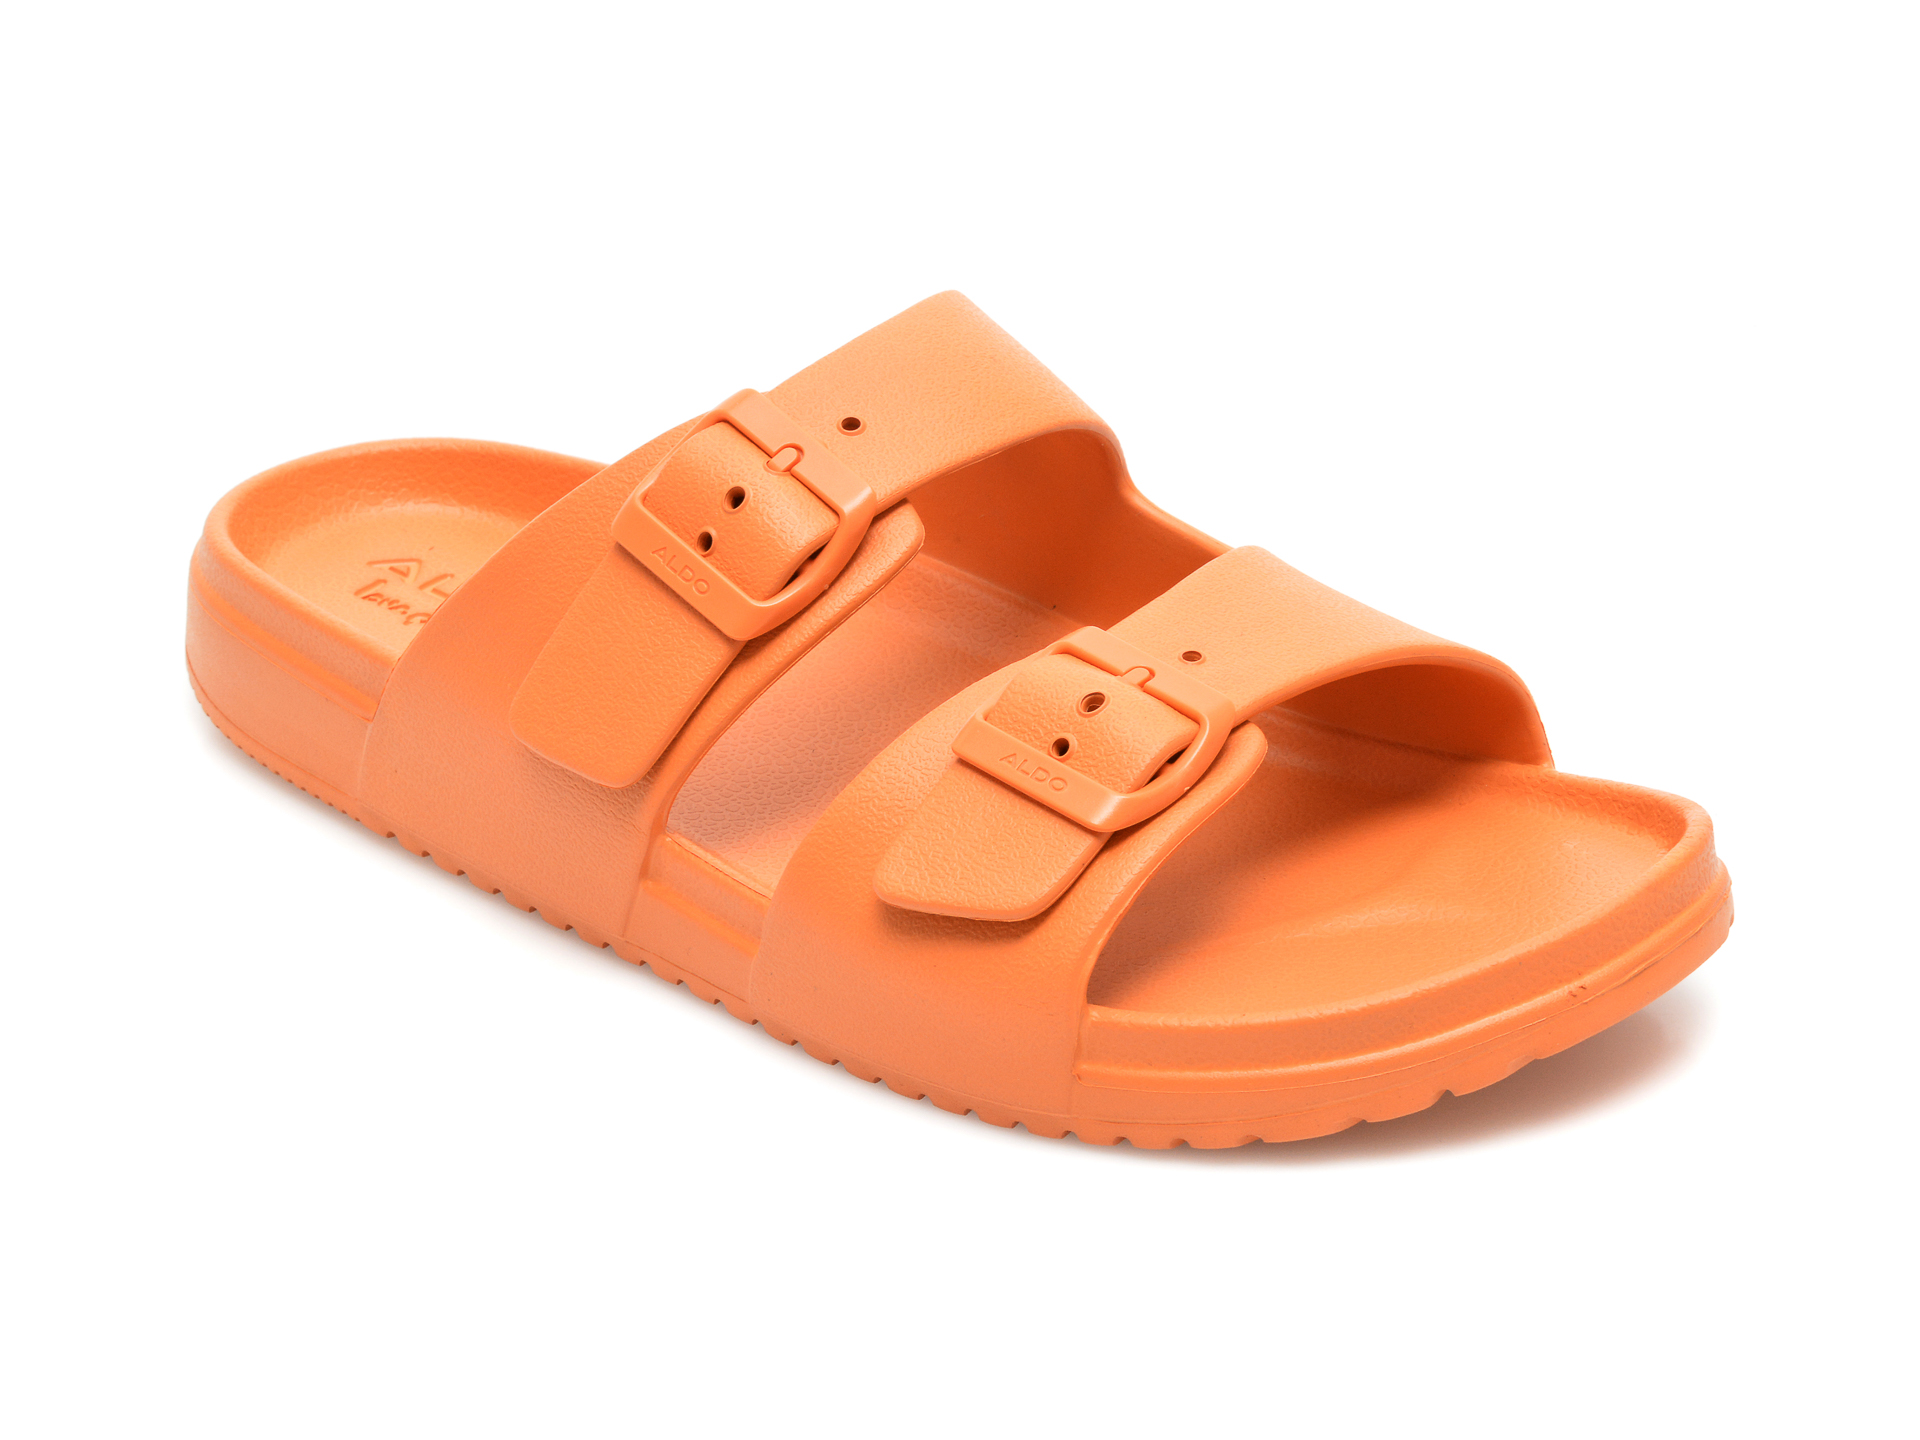 Papuci ALDO portocalii, Hideo800, din pvc Aldo imagine 2022 reducere